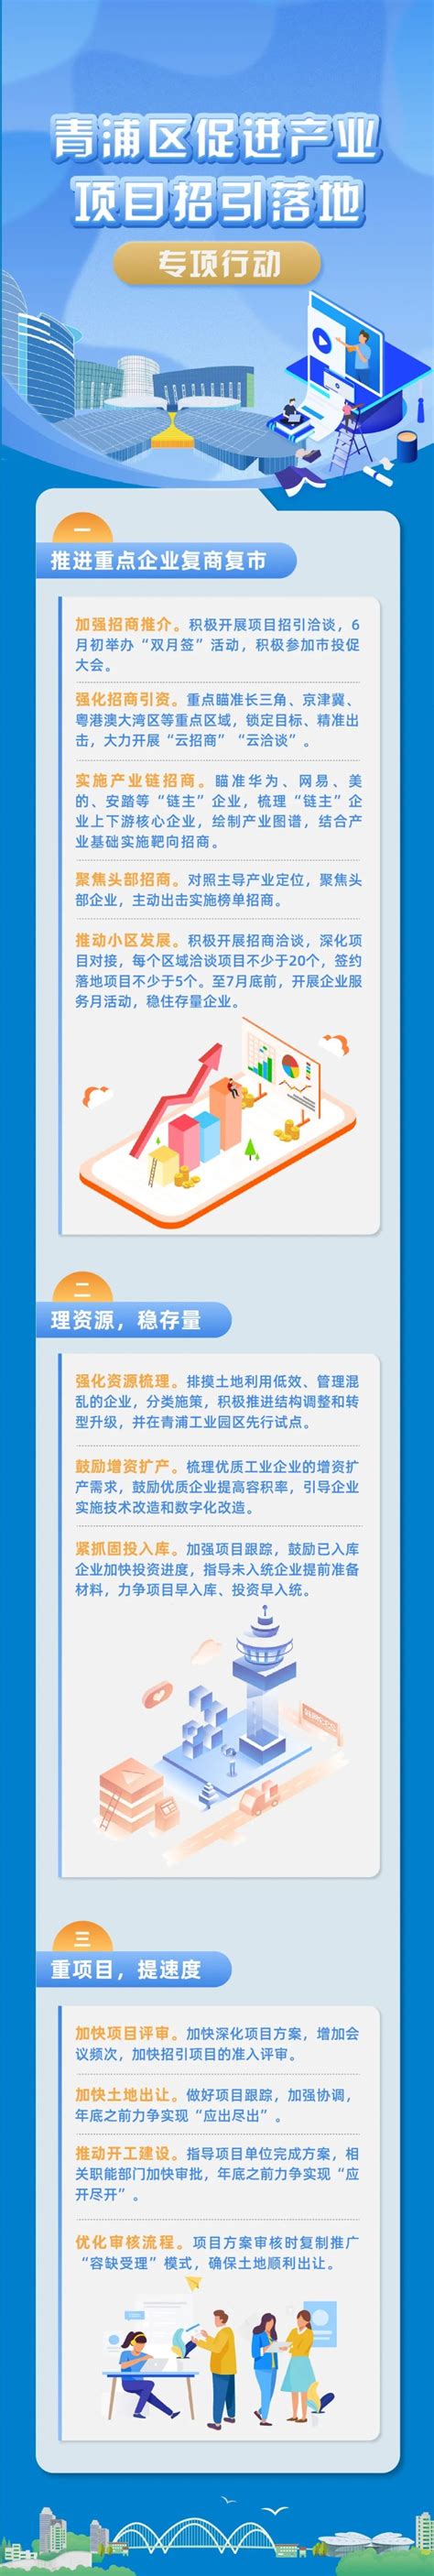 上海青浦区：探索“互联网+农业” 推进乡村振兴战略 - 农业新闻 - 蛇农网